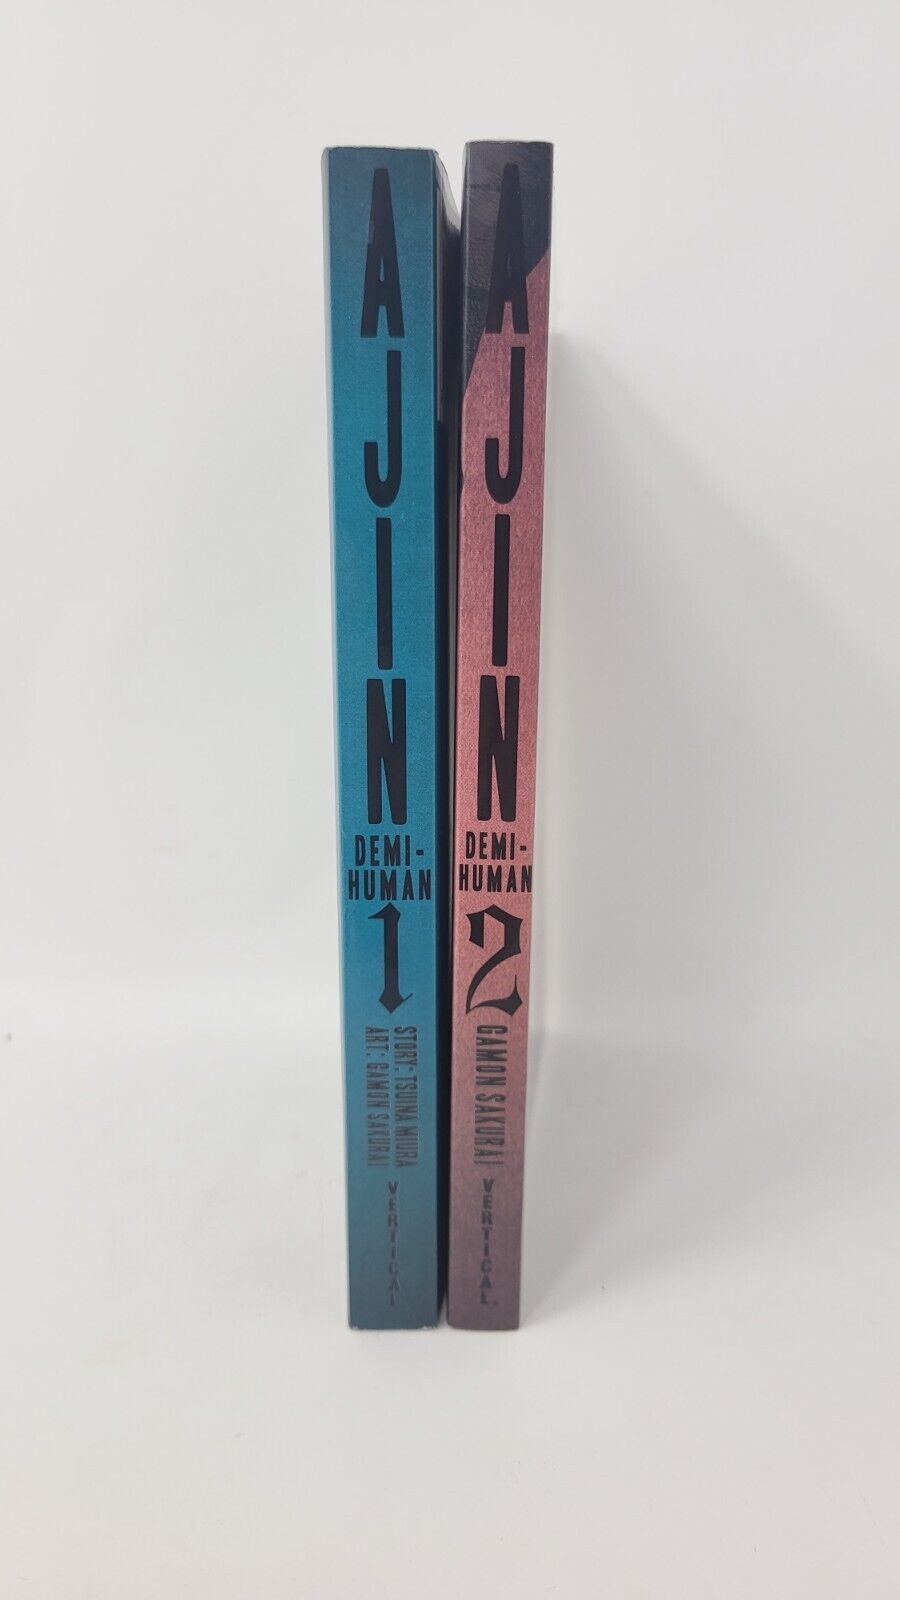 Ajin demi-human vol. 1 and 2 by Gamon Sakurai